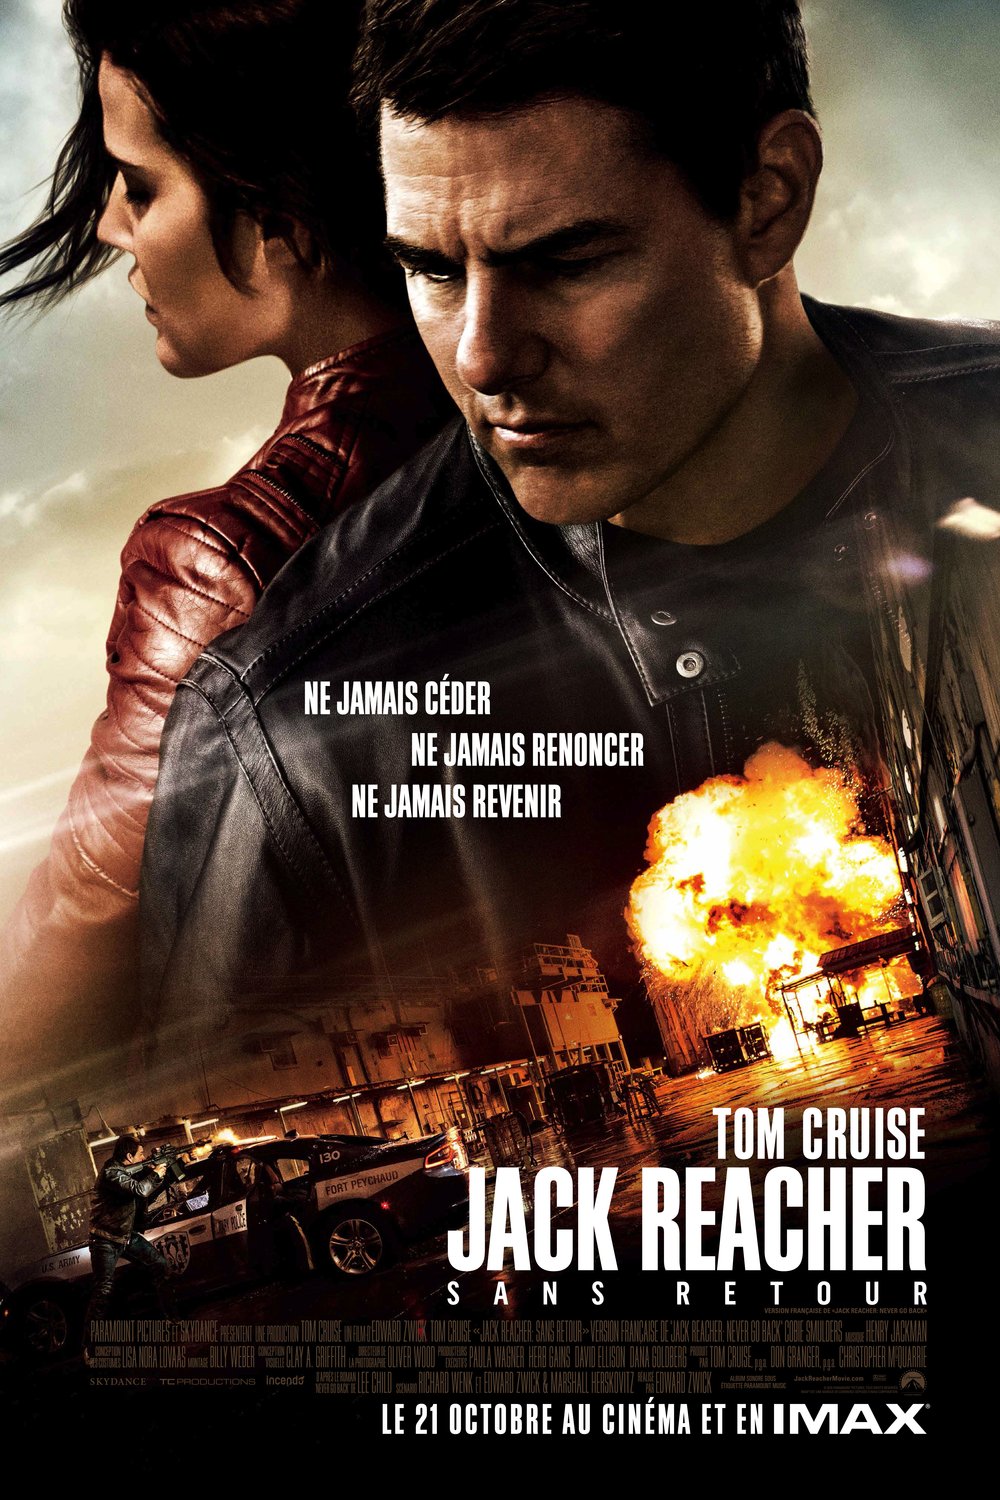 L'affiche du film Jack Reacher: Sans retour